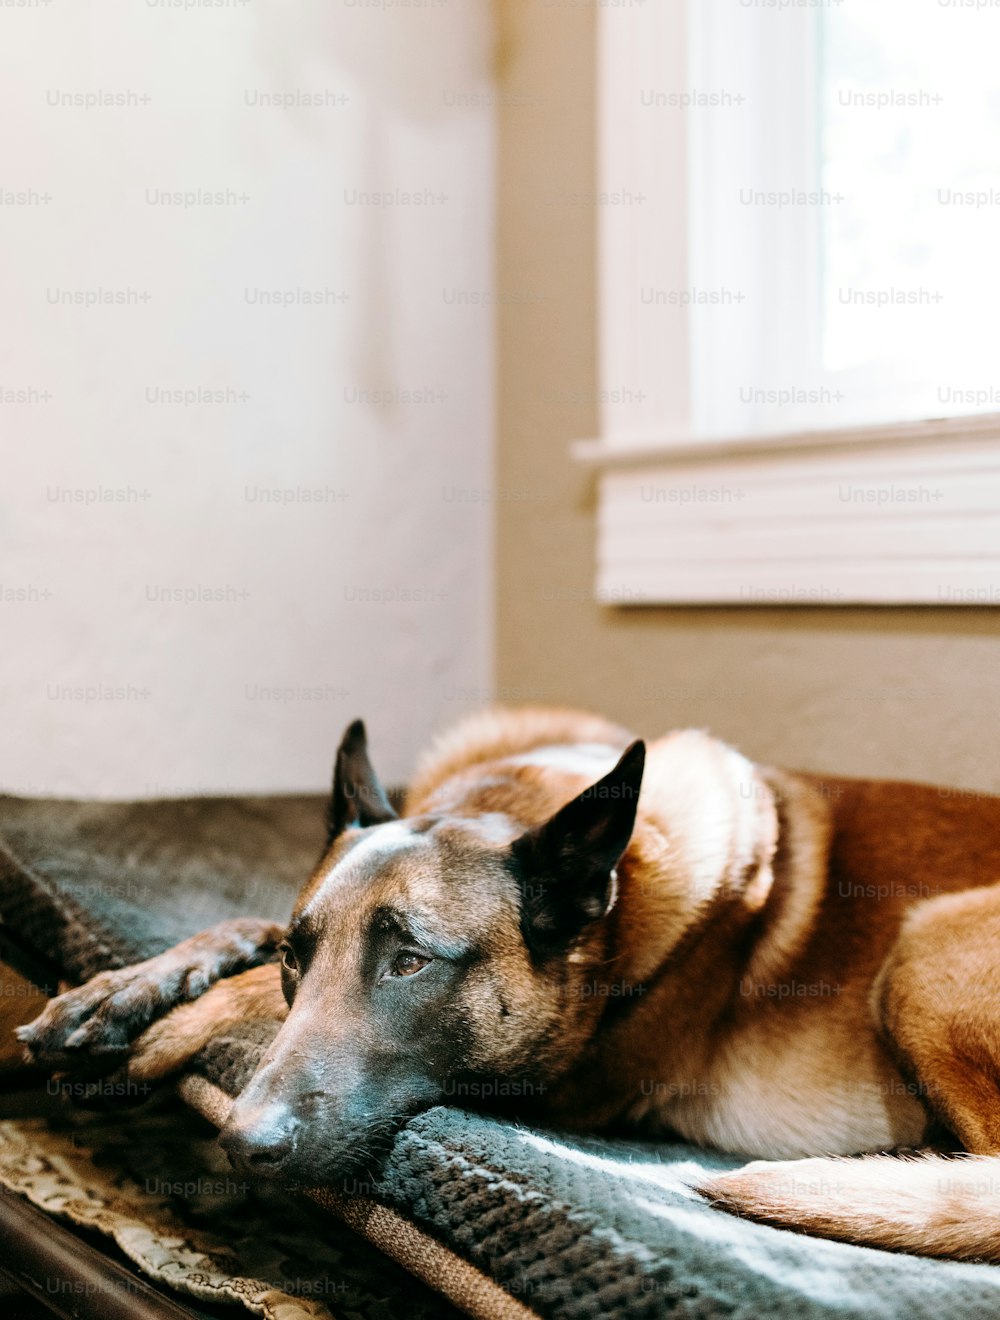 Un perro acostado encima de una manta encima de una cama